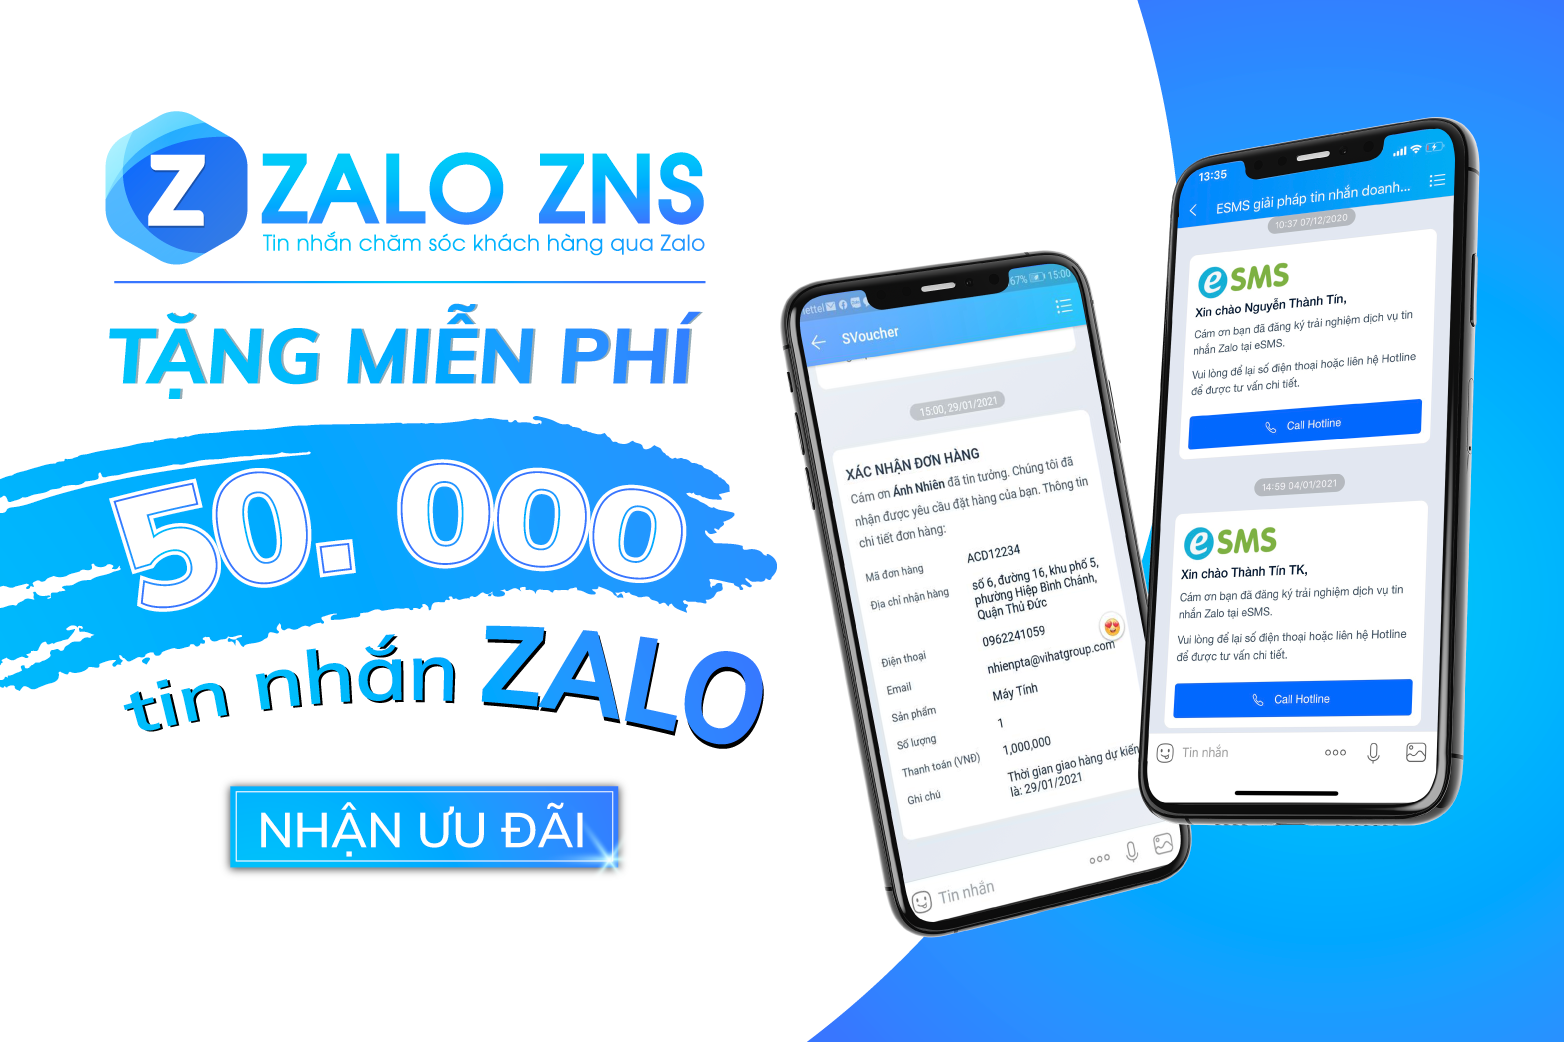 ZNS - Zalo Notification Service